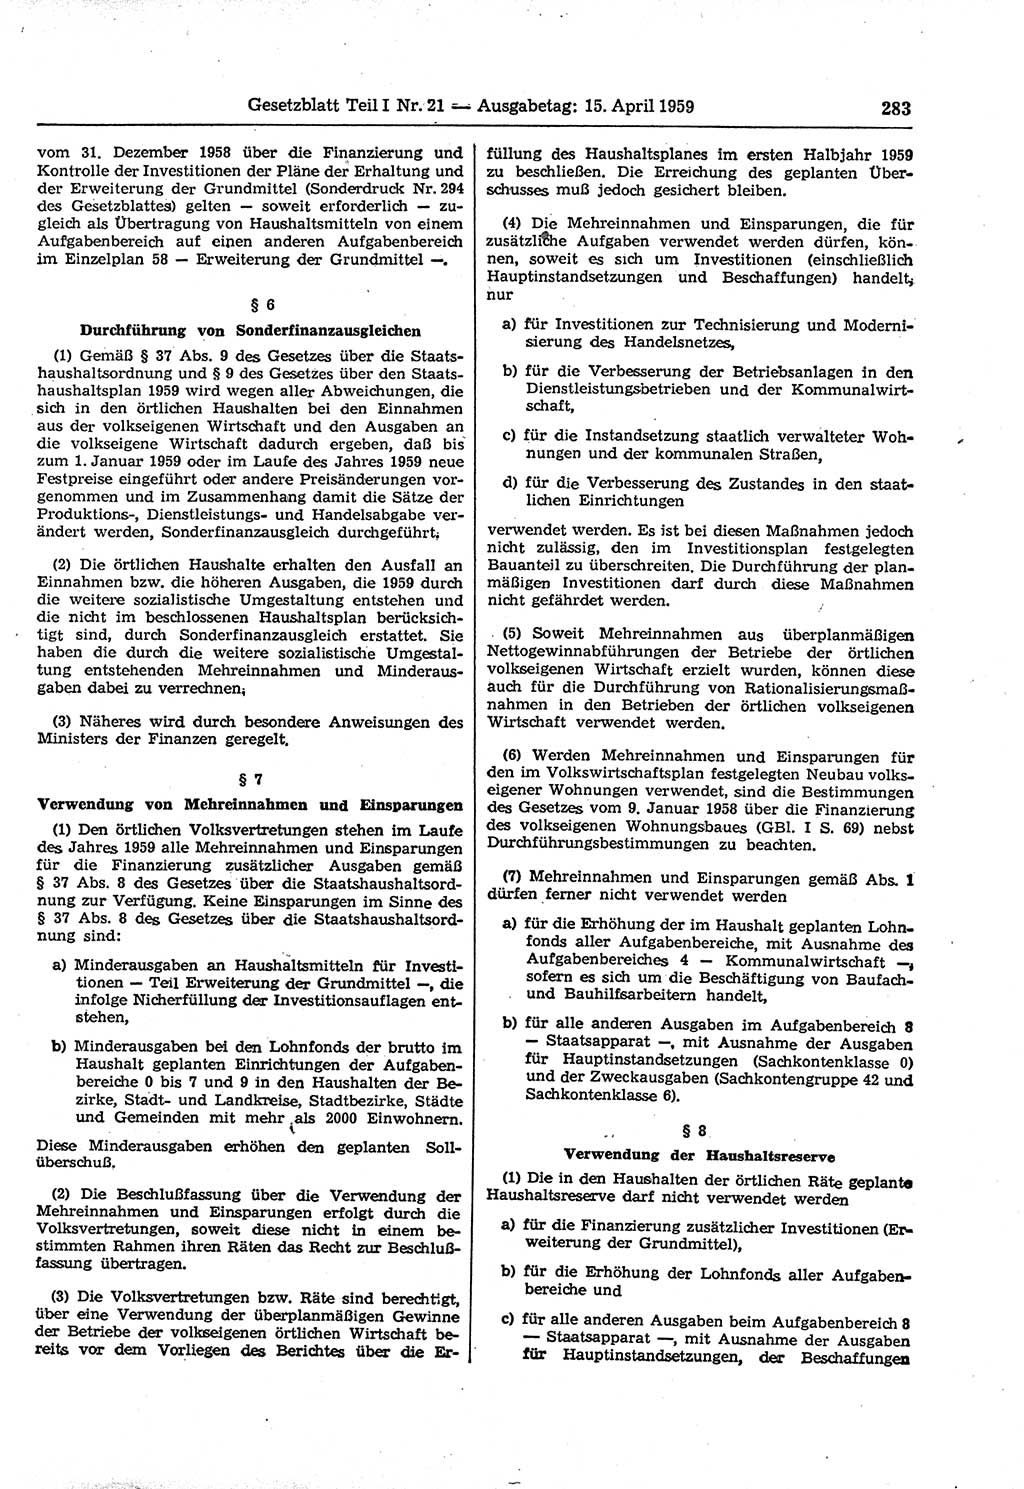 Gesetzblatt (GBl.) der Deutschen Demokratischen Republik (DDR) Teil Ⅰ 1959, Seite 283 (GBl. DDR Ⅰ 1959, S. 283)